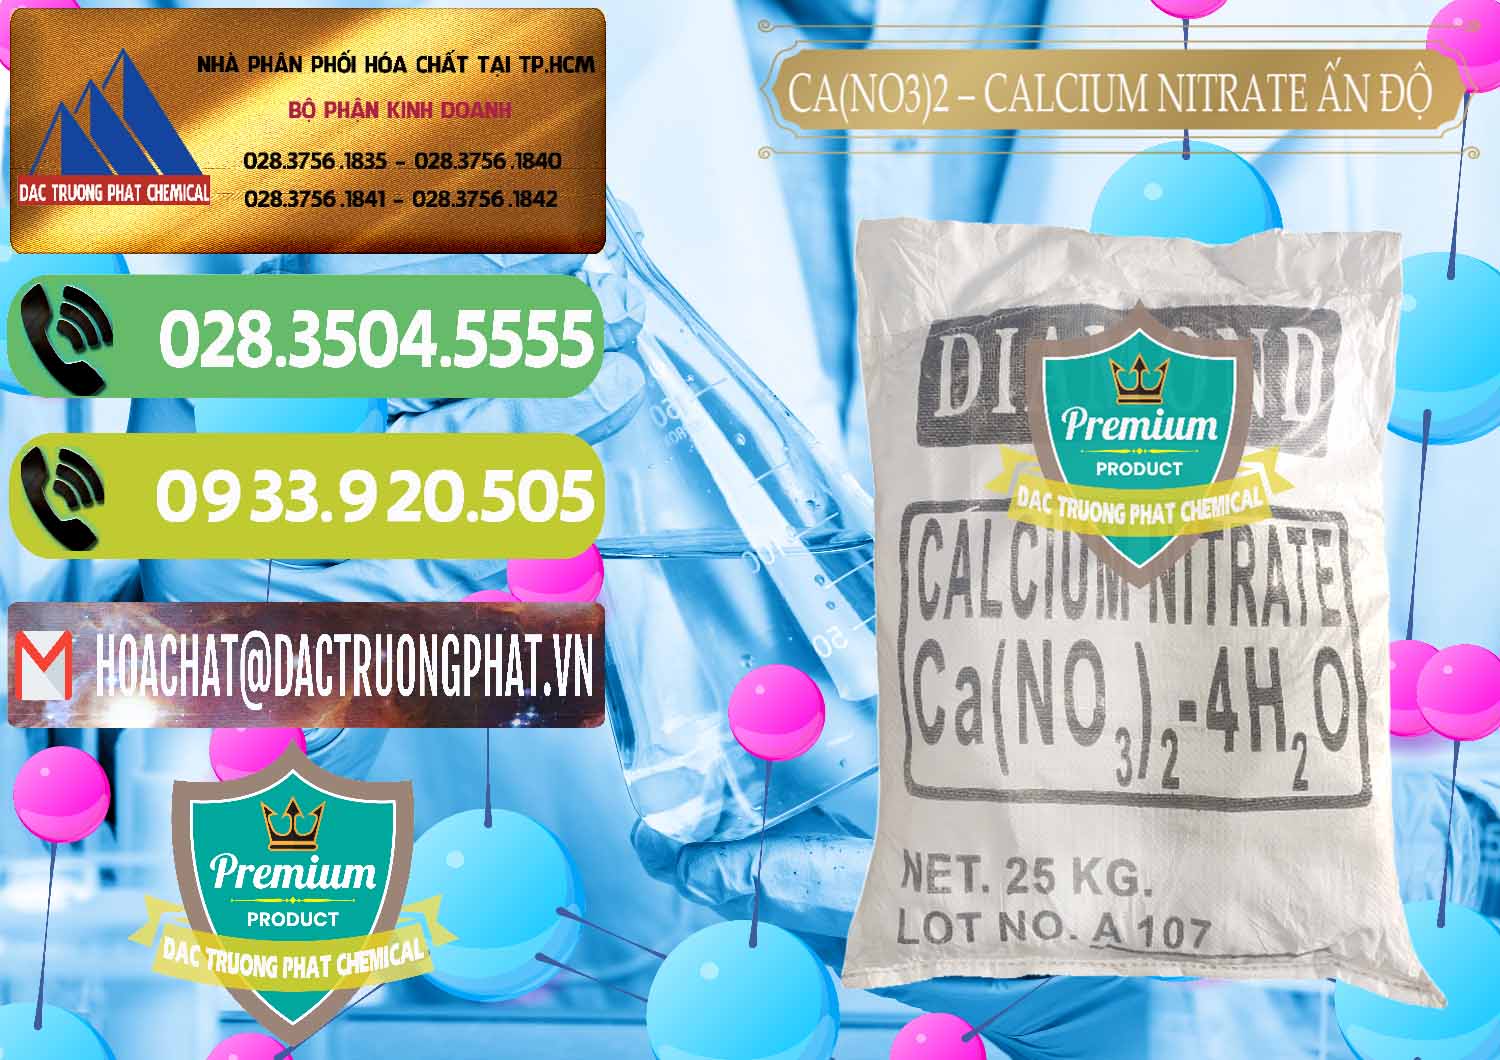 Cty chuyên bán & cung cấp CA(NO3)2 – Calcium Nitrate Ấn Độ India - 0038 - Kinh doanh _ phân phối hóa chất tại TP.HCM - hoachatmientay.vn